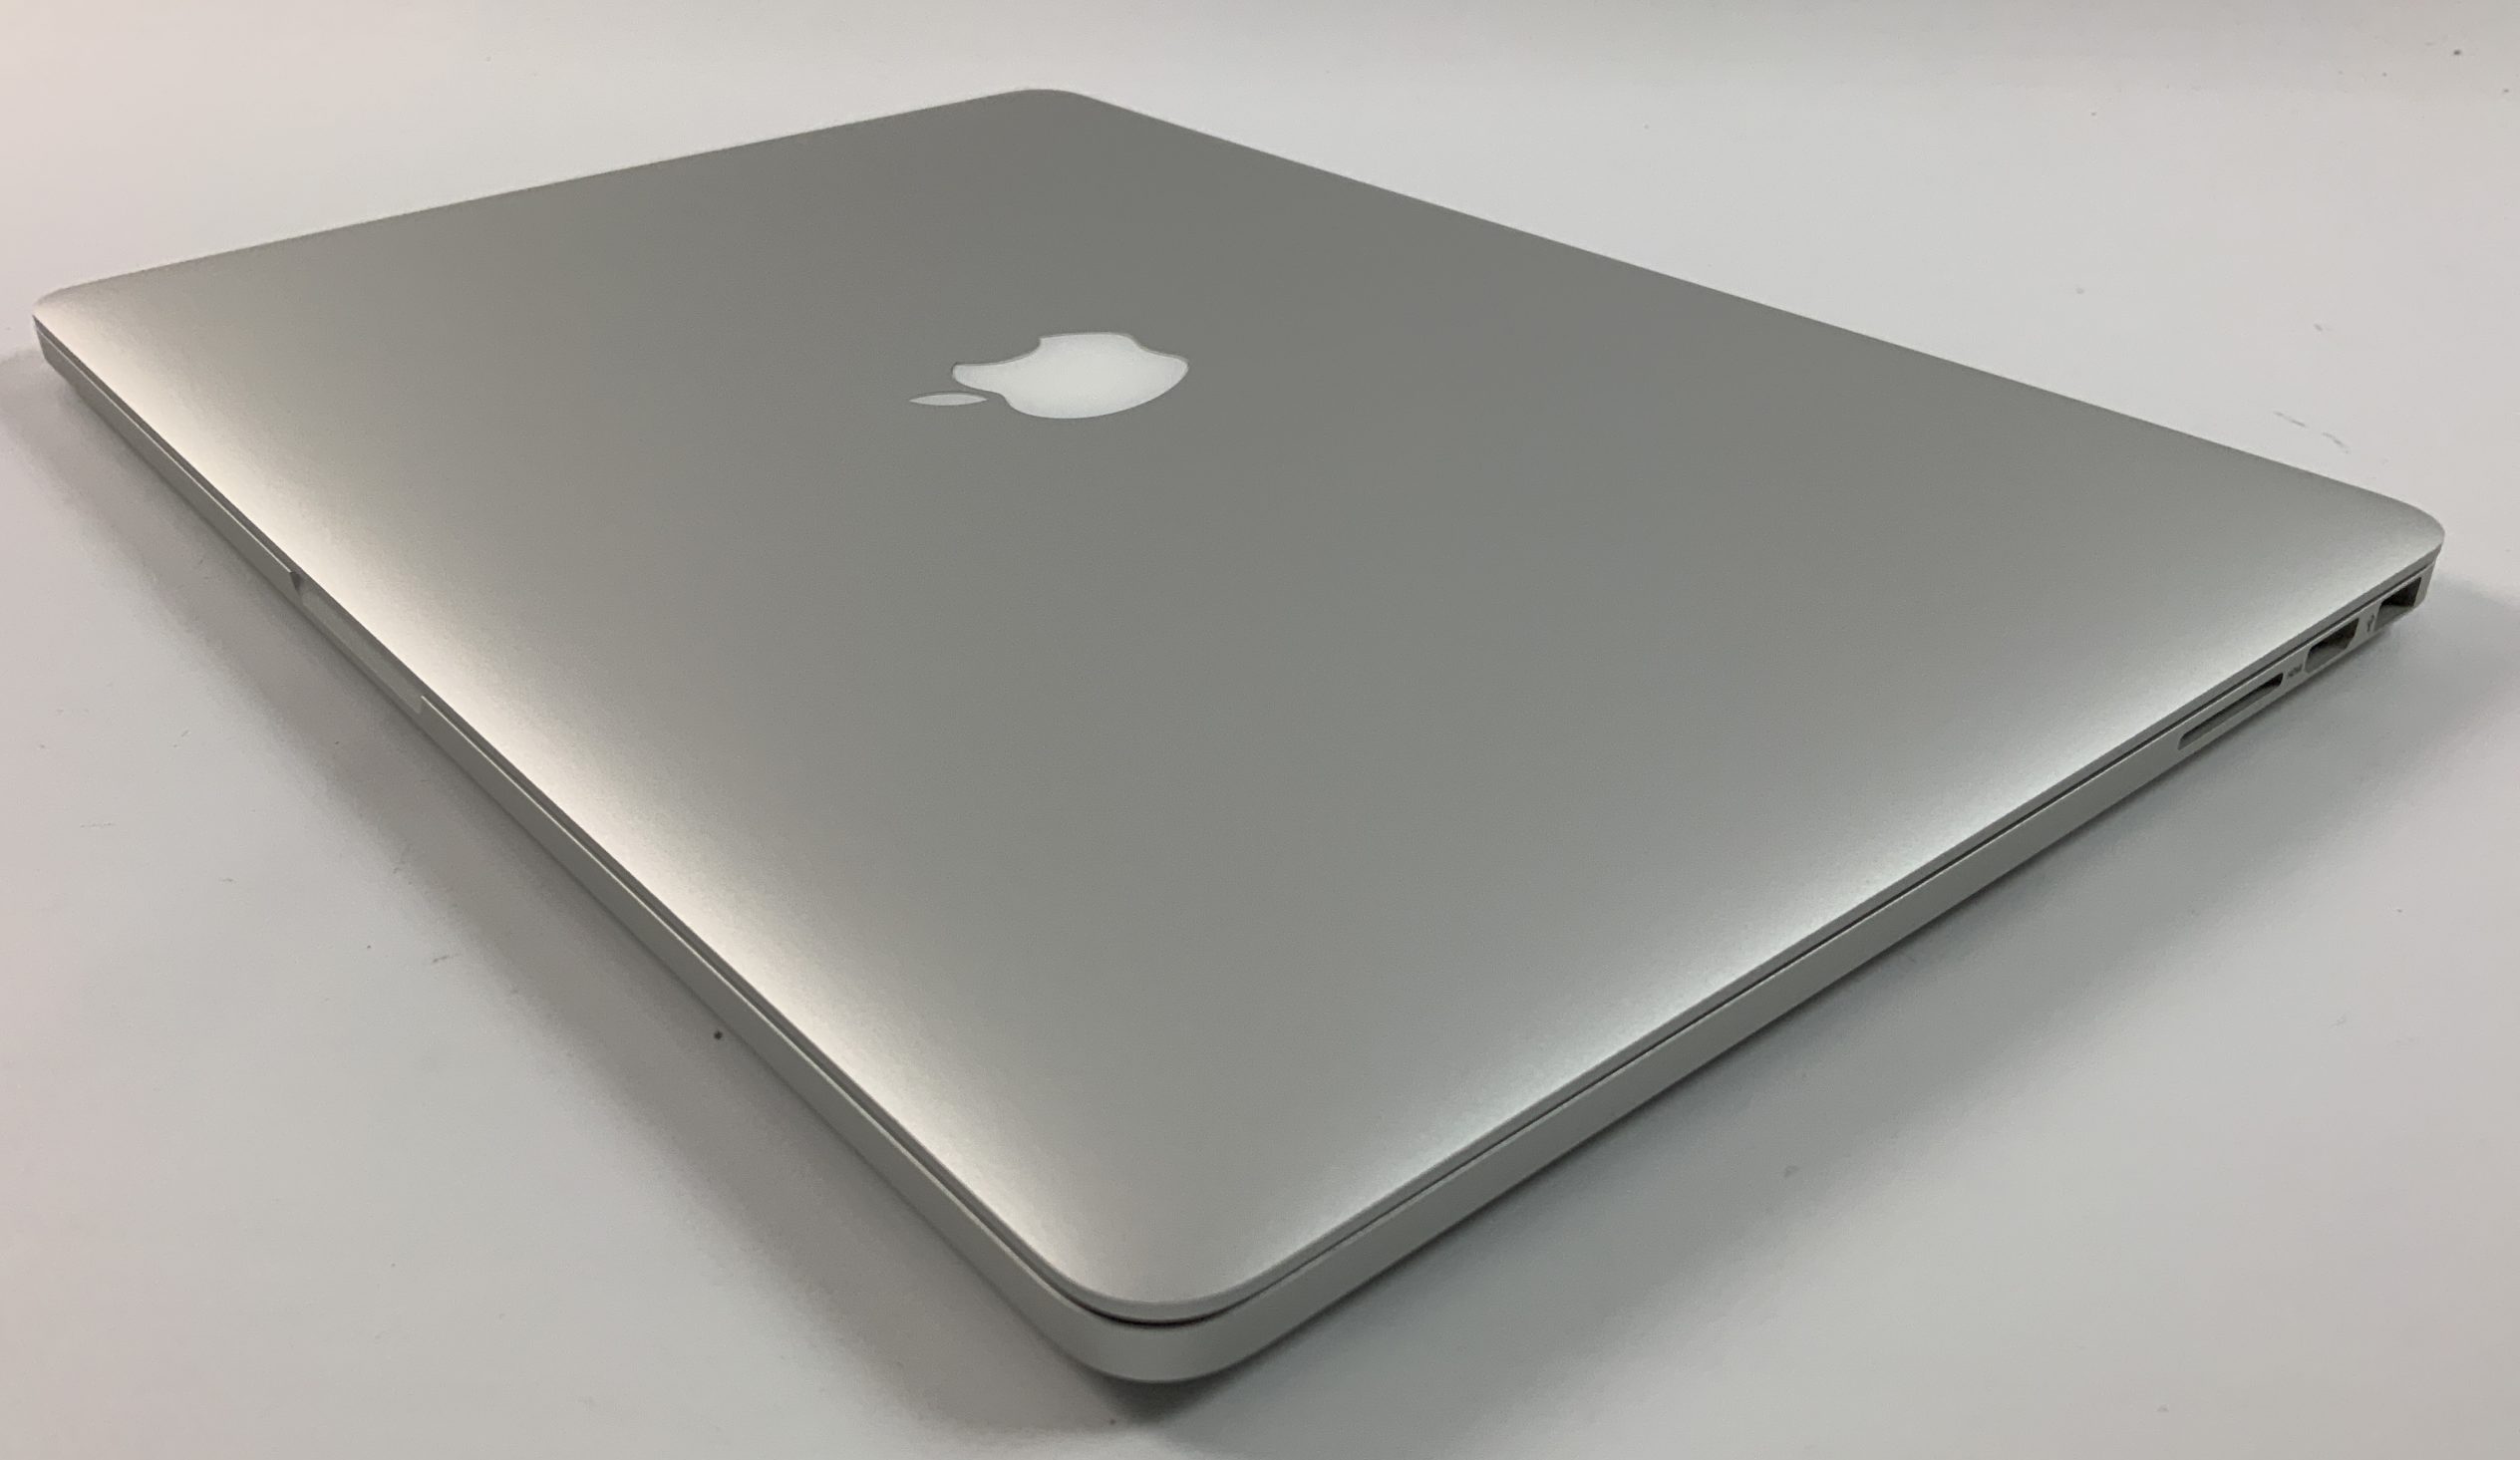 MacBook Pro Retina 15" Mid 2015 (Intel Quad-Core i7 2.2 GHz 16 GB RAM 256 GB SSD), Intel Quad-Core i7 2.2 GHz, 16 GB RAM, 256 GB SSD, Kuva 3